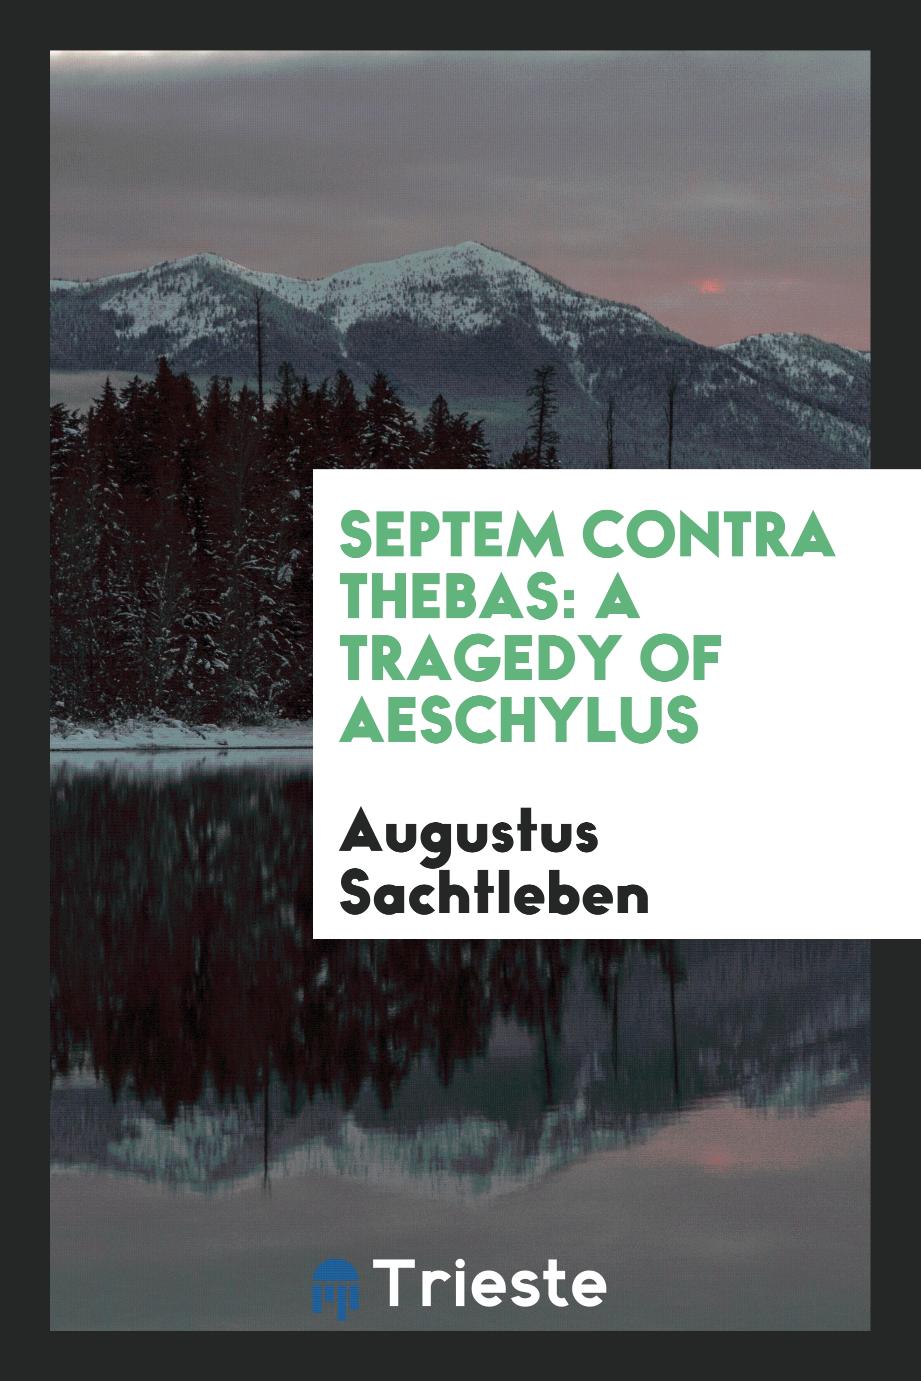 Septem Contra Thebas: A Tragedy of Aeschylus